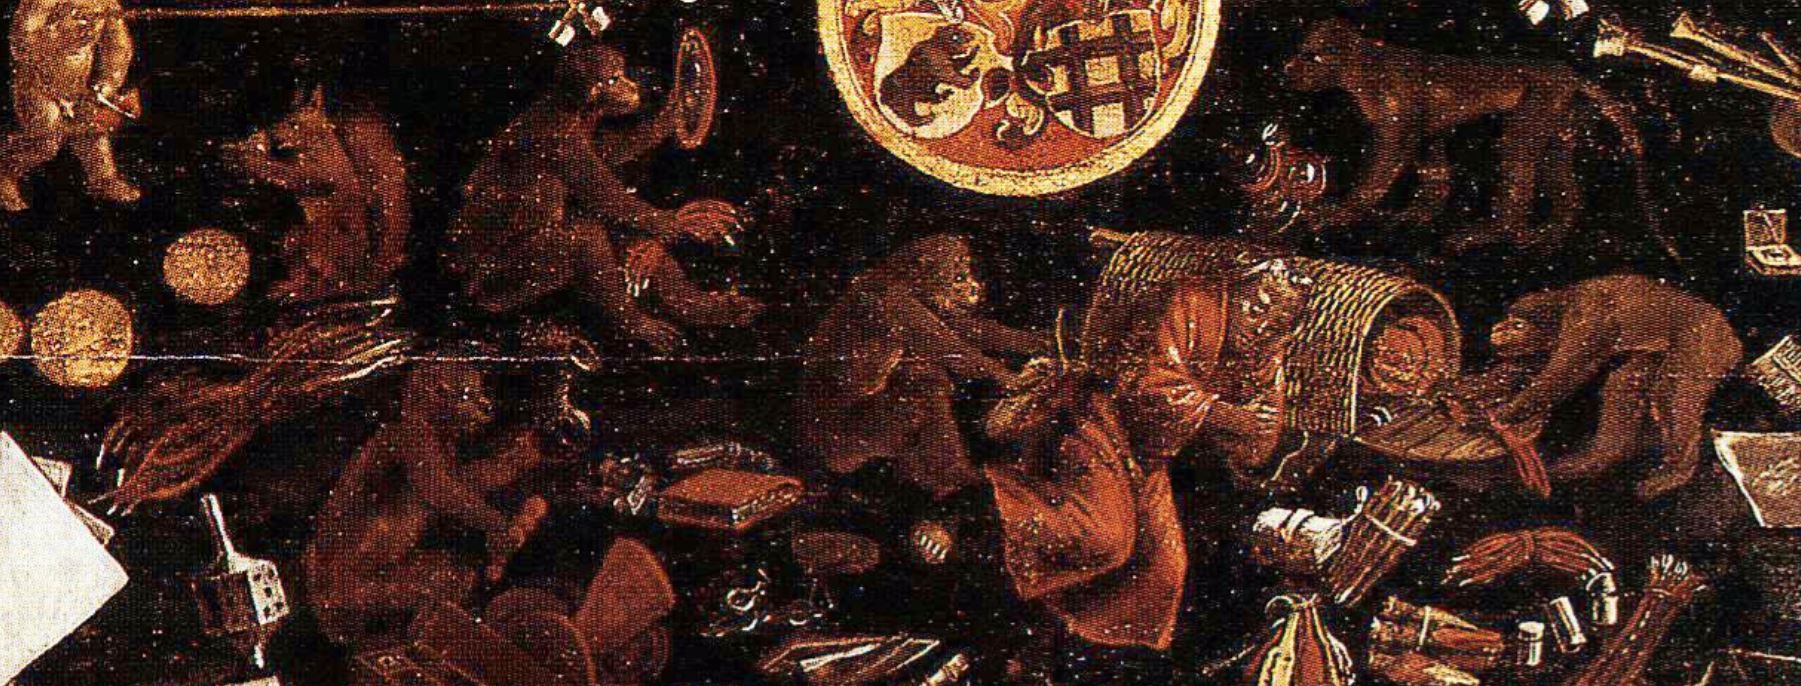 Hans Herbst 1515 Table de jeux peinte Schweizerisches LandesMusem Zurich.